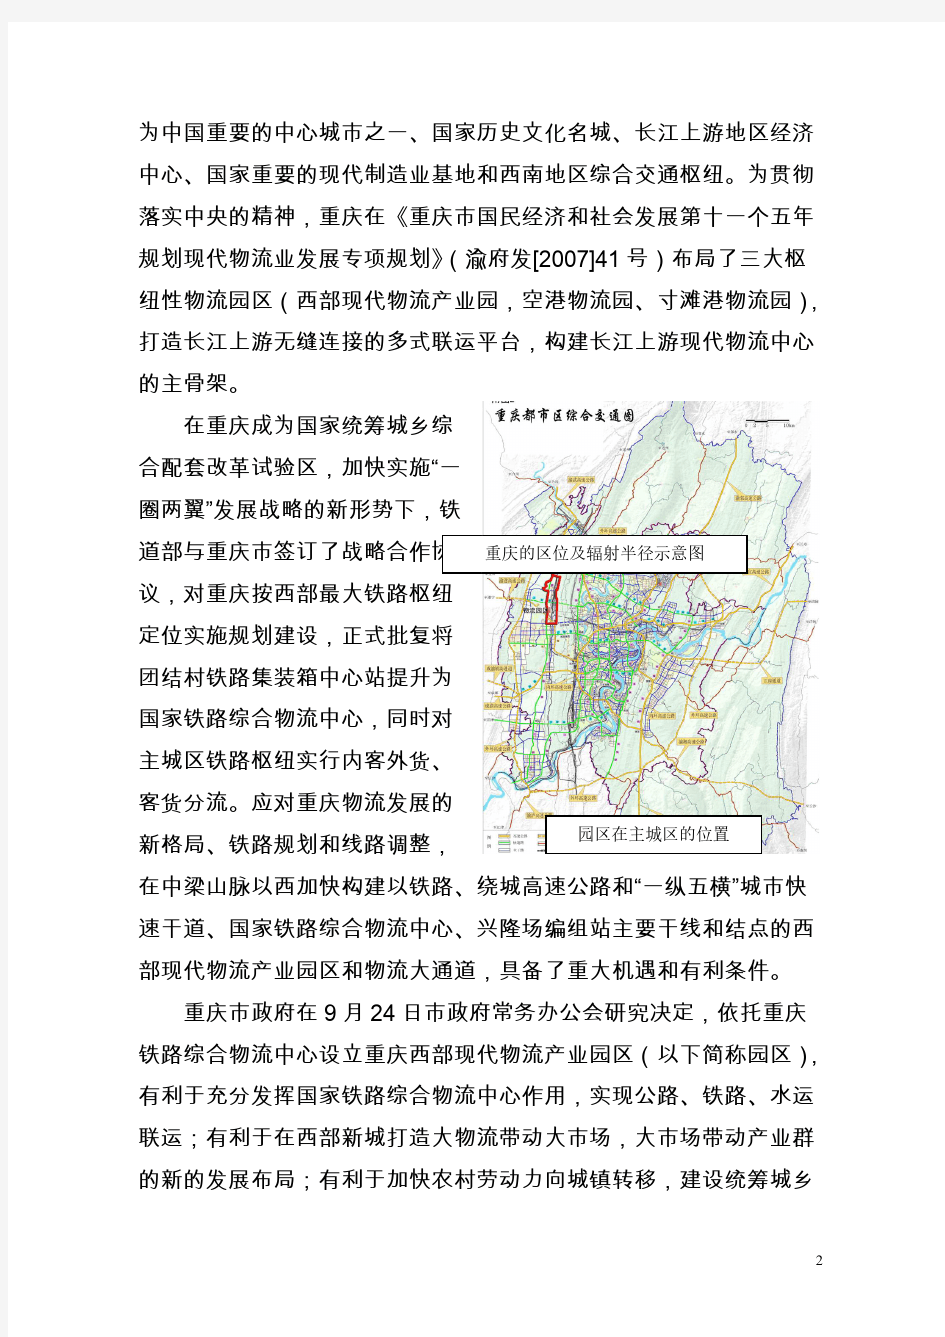 重庆西部现代物流园区概况-推荐下载